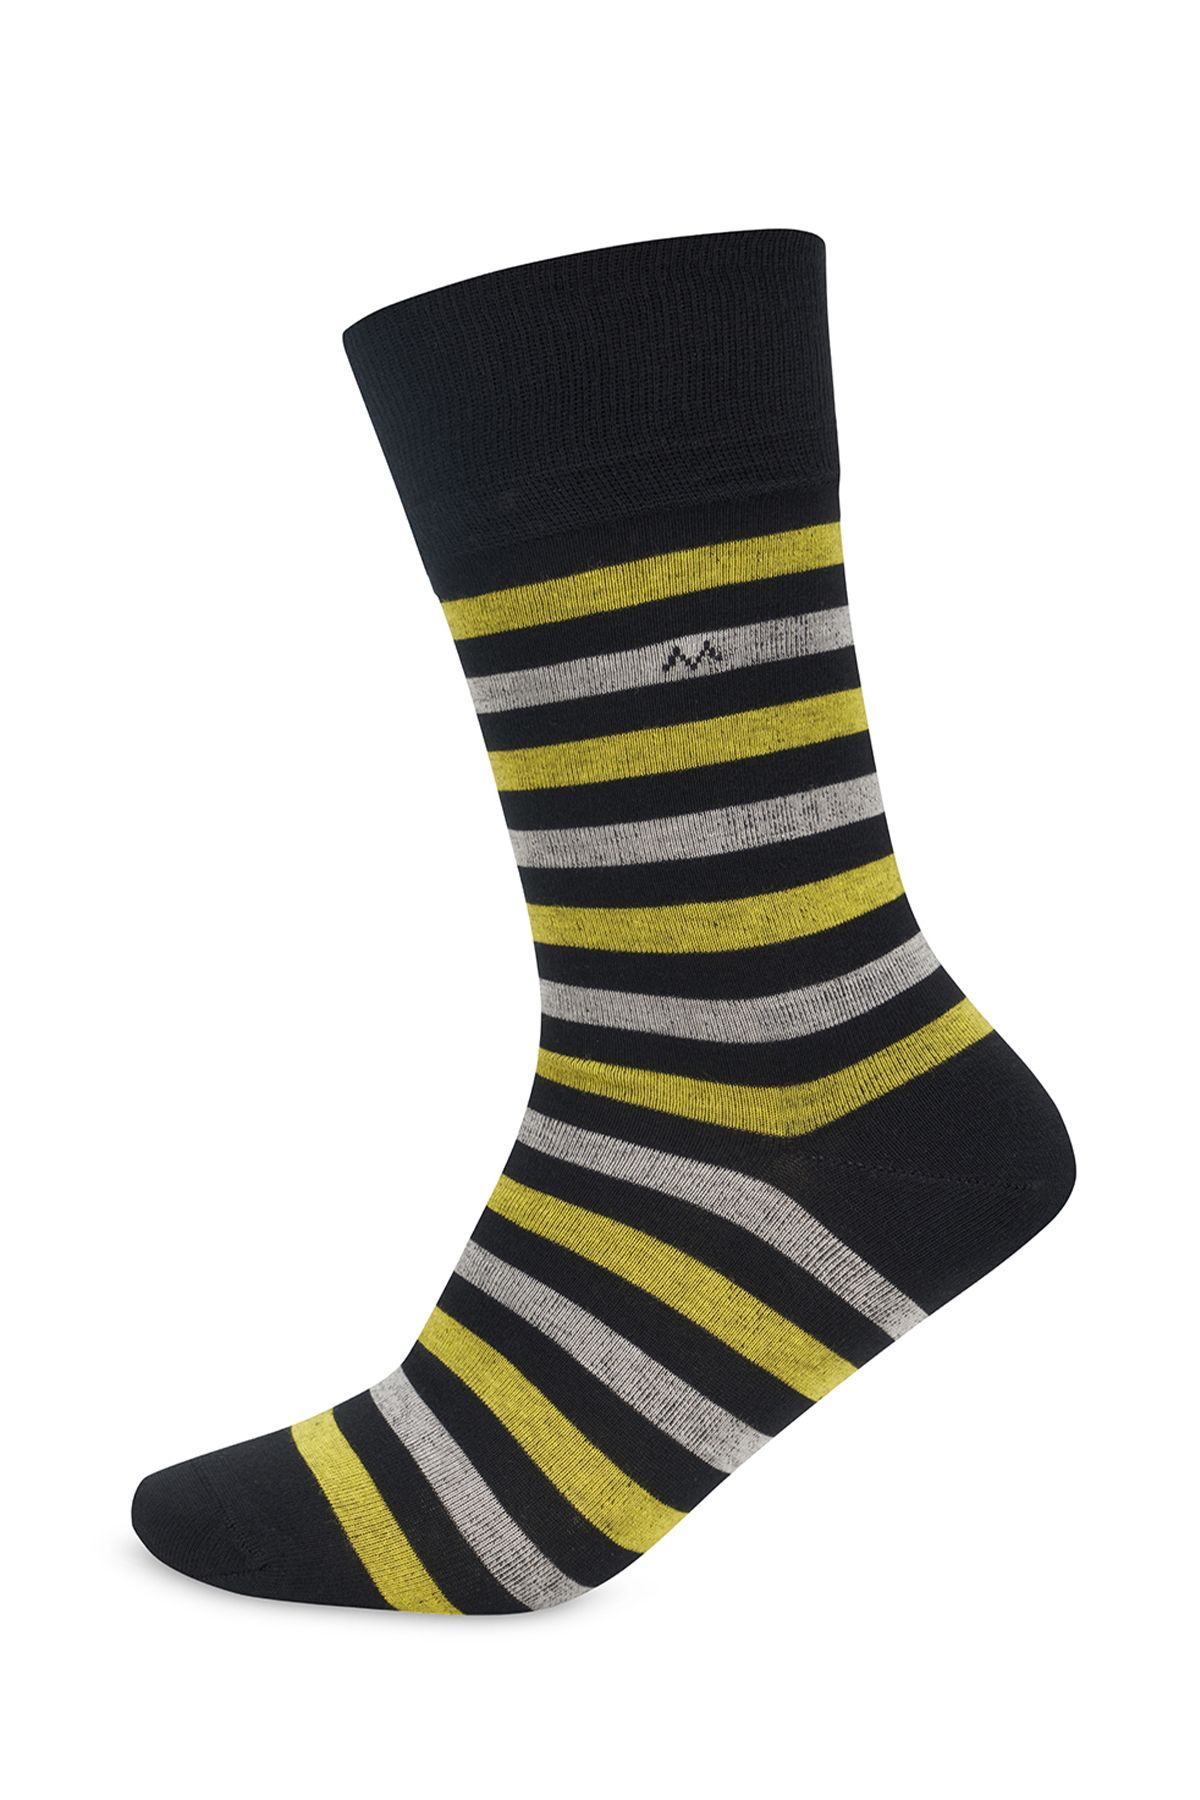 Hemington Çizgili Siyah Yazlık Pamuk Çorap